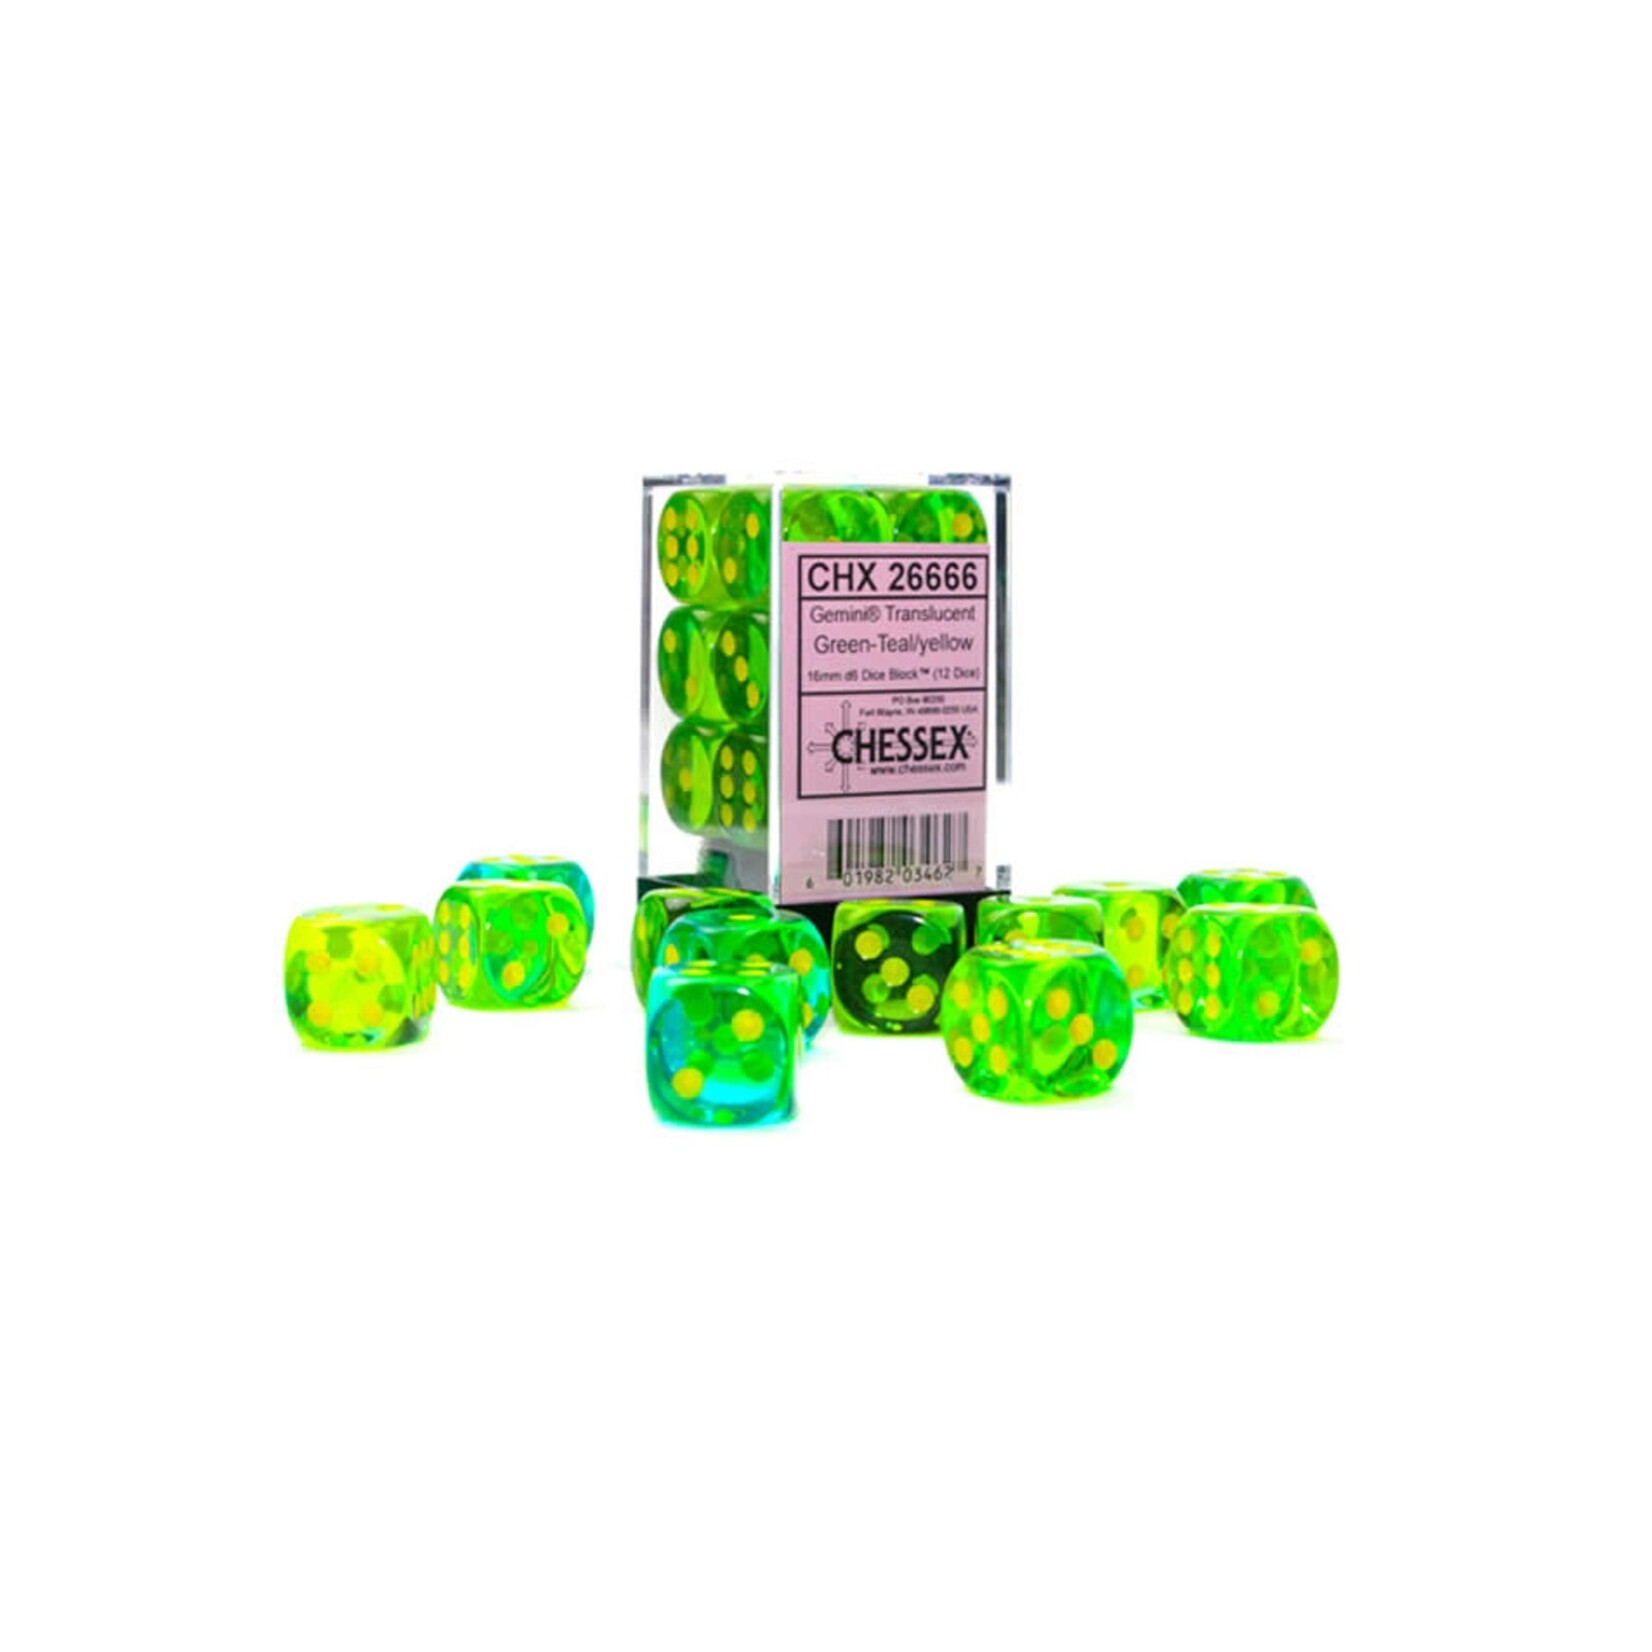 Chessex Brique de 12 d6 16mm Gemini translucides vert/sarcelle avec points jaunes